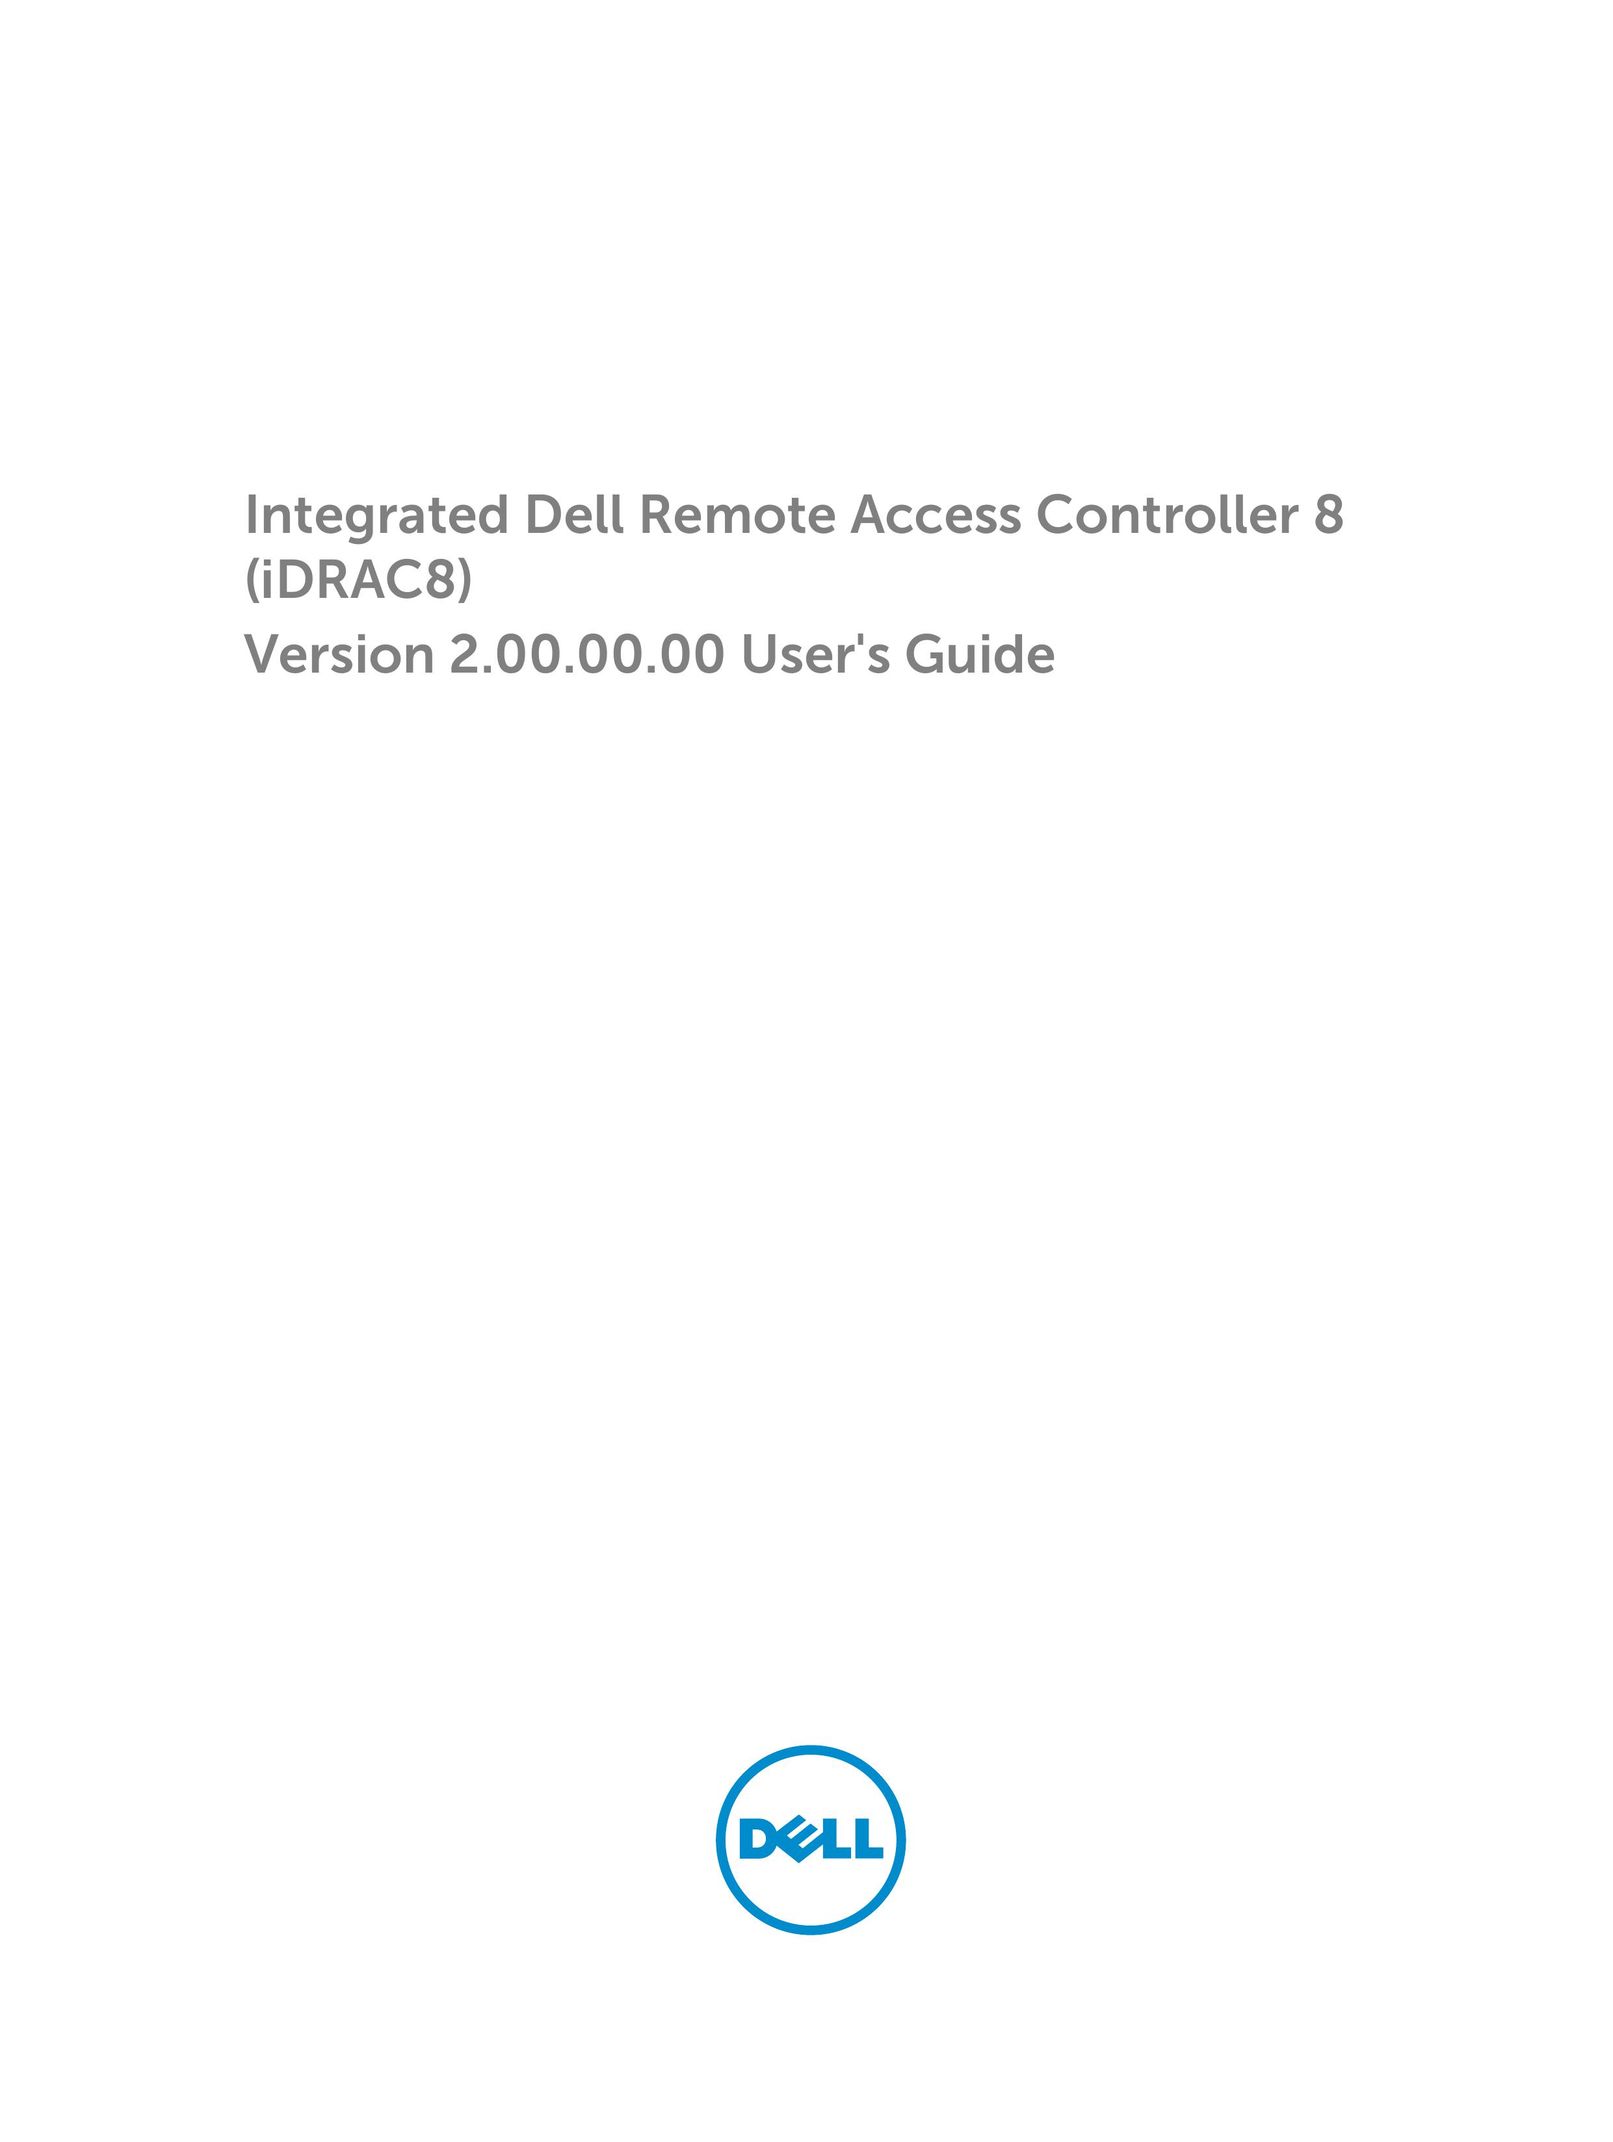 Dell iDRAC8 Universal Remote User Manual